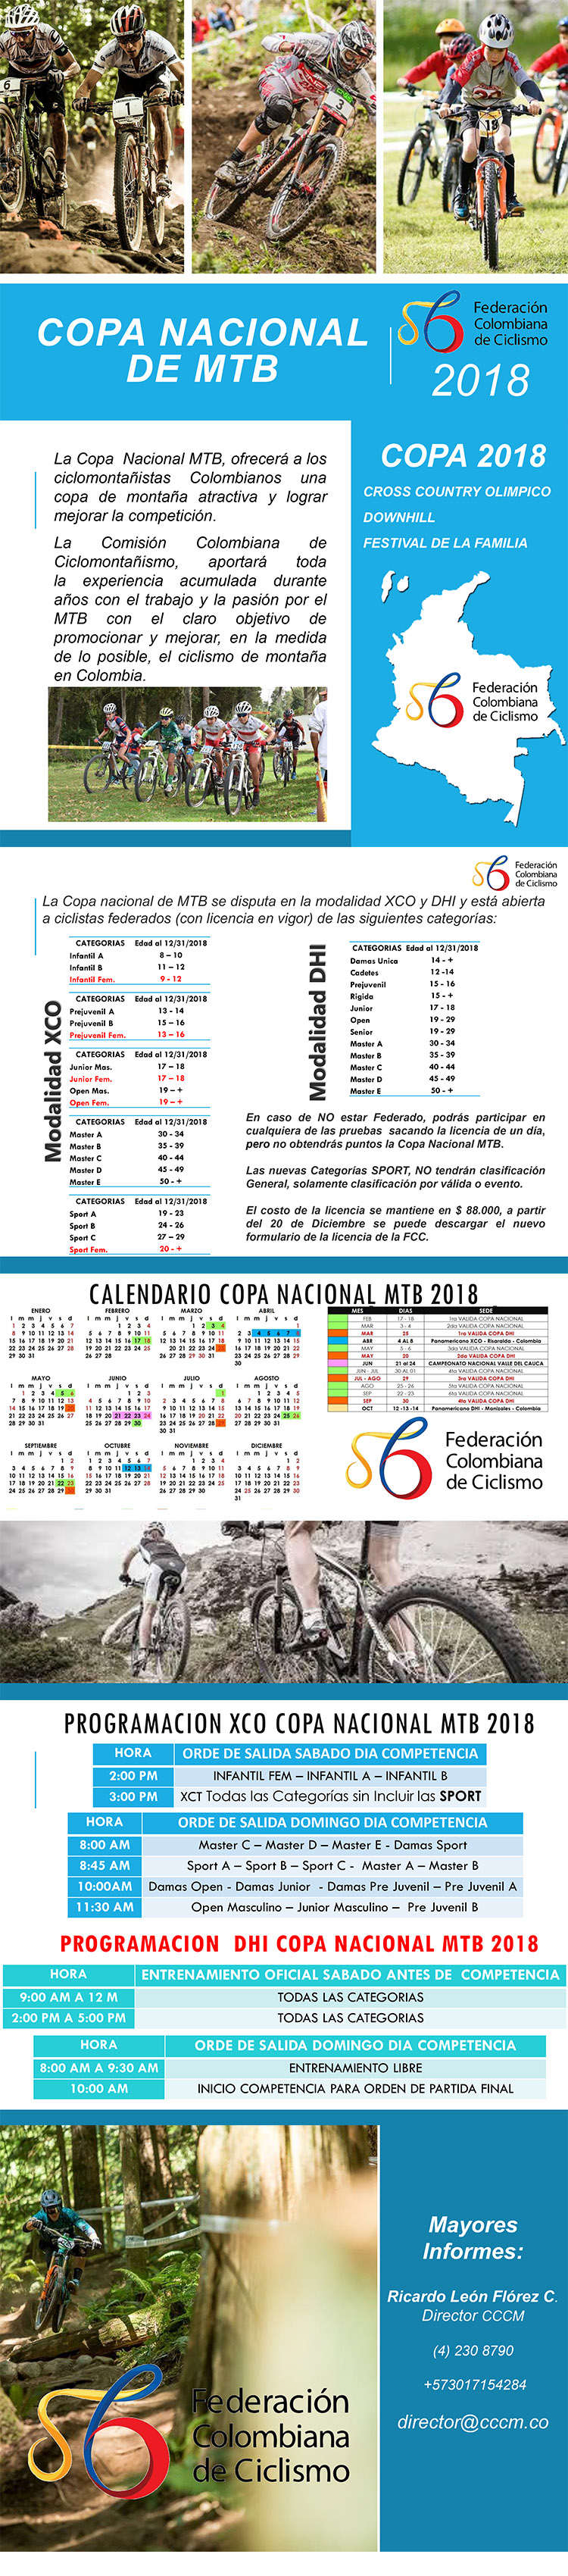 Presentación Copa Colombia 2018 XCO - DHI